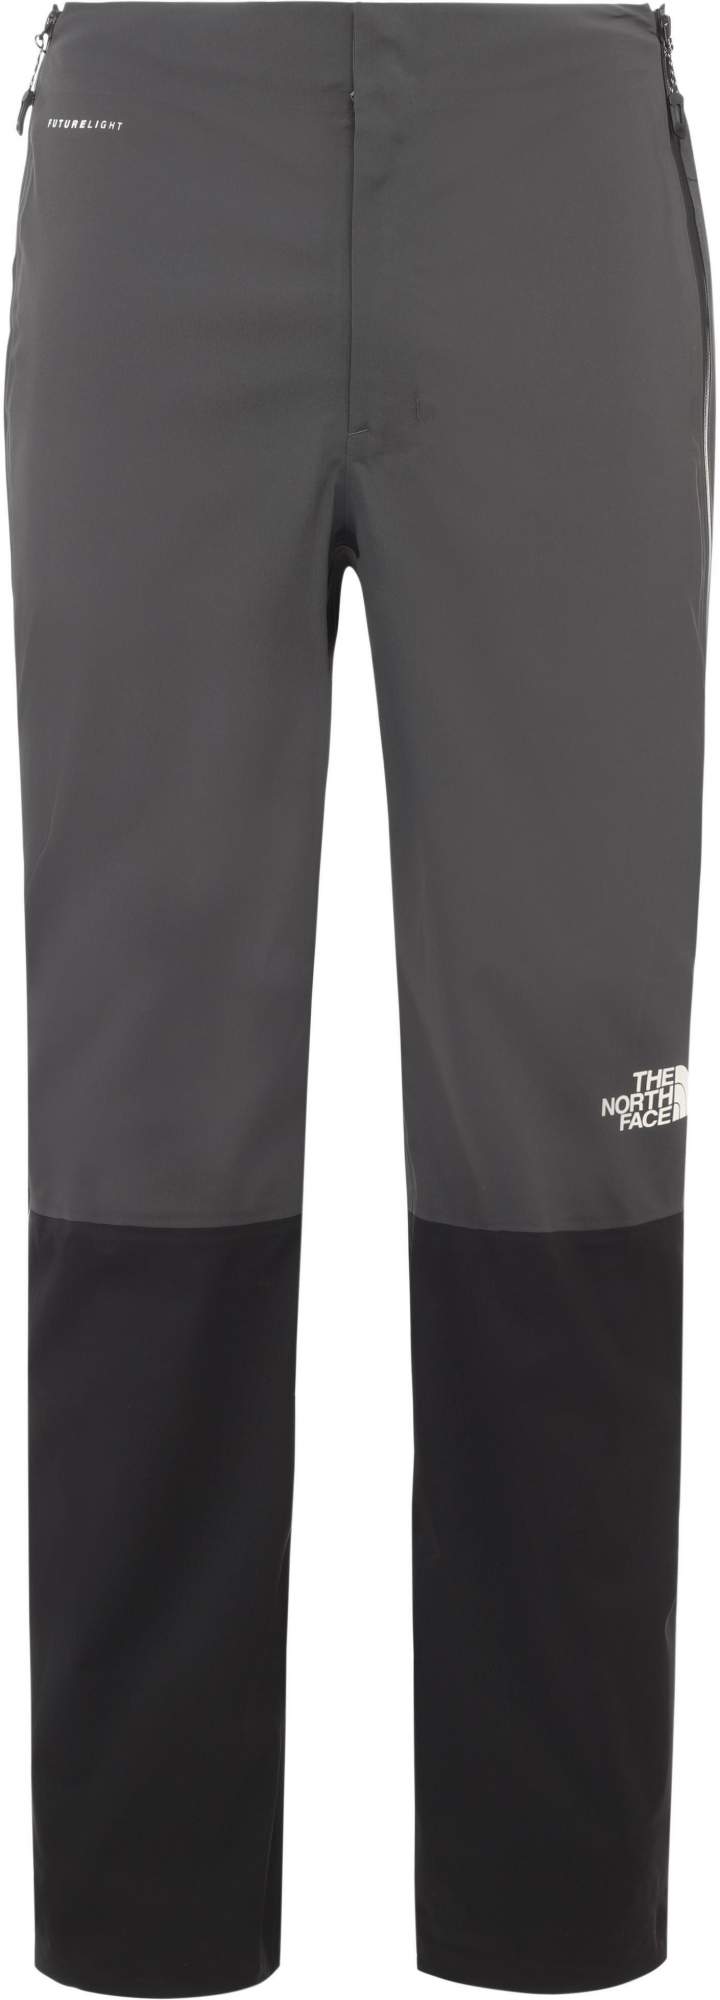 Спортивные брюки мужские The North Face Impendor Futurelight™ черные L